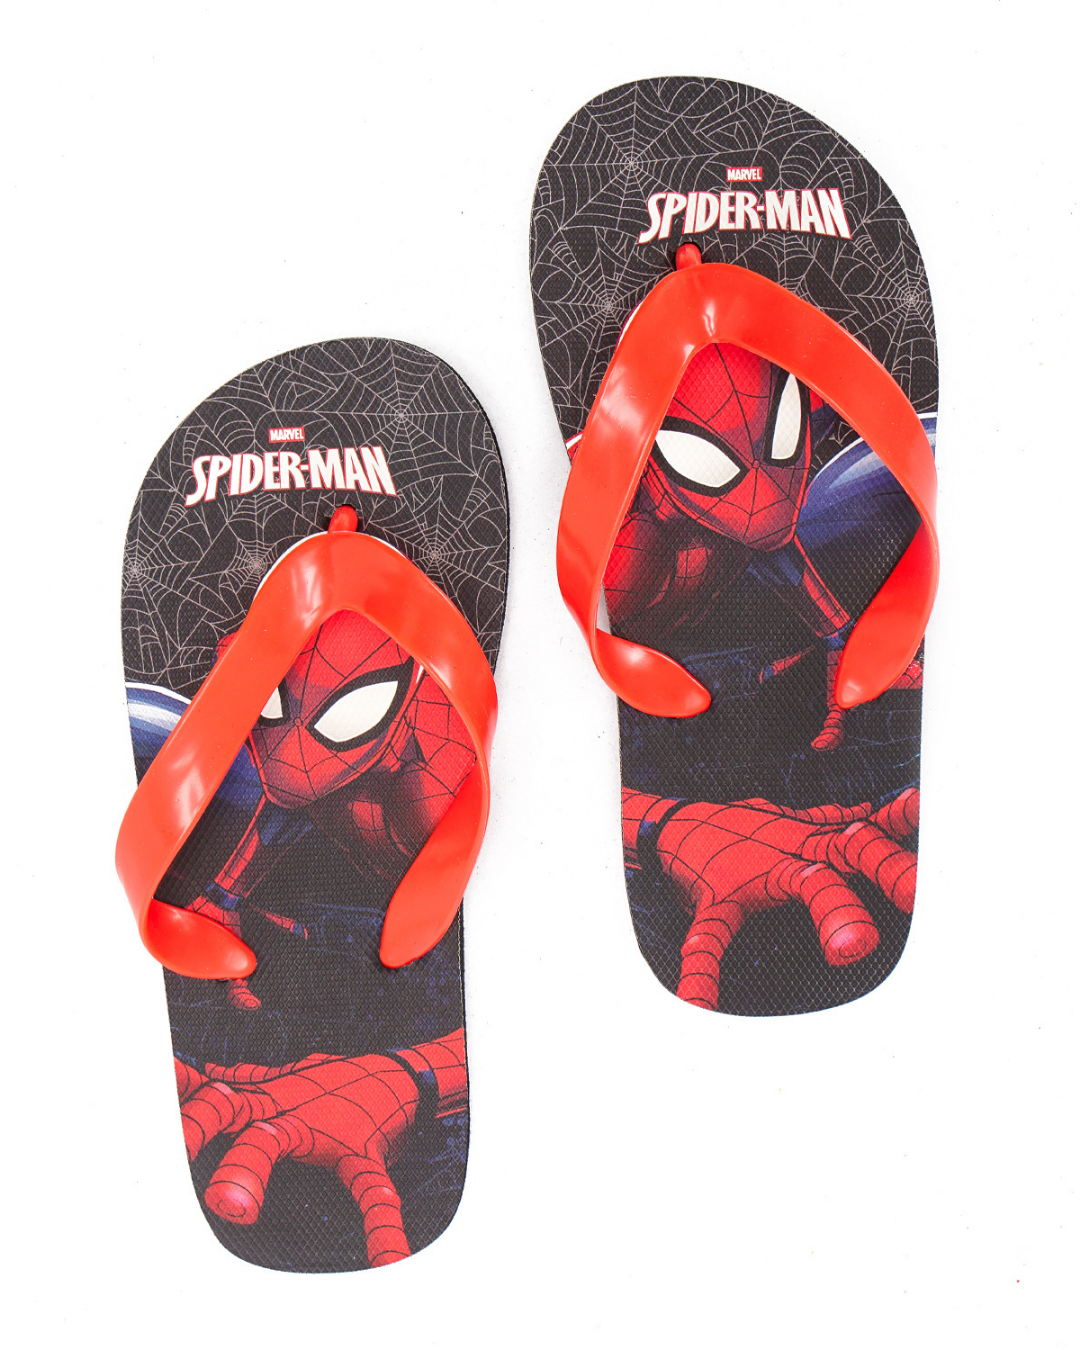 SPIDER MAN children's slippers